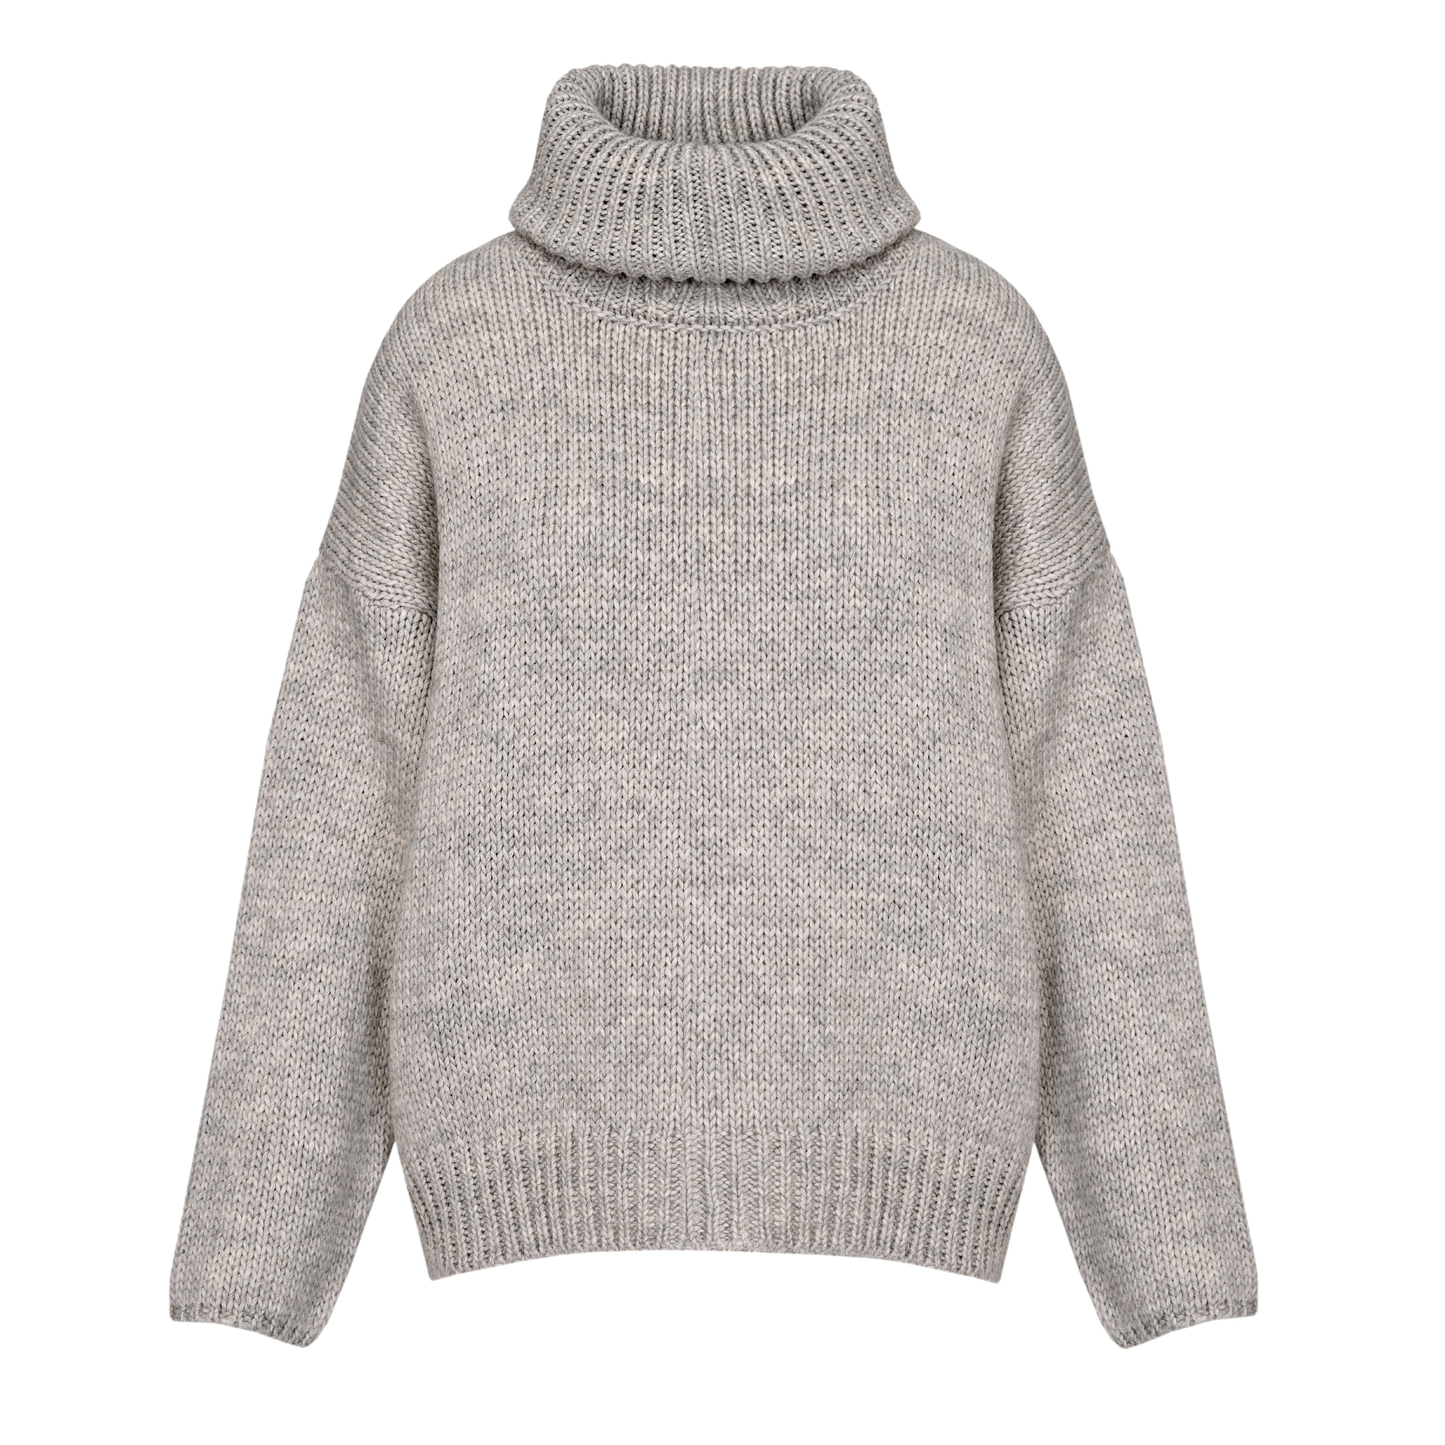 Oven Beige sweater